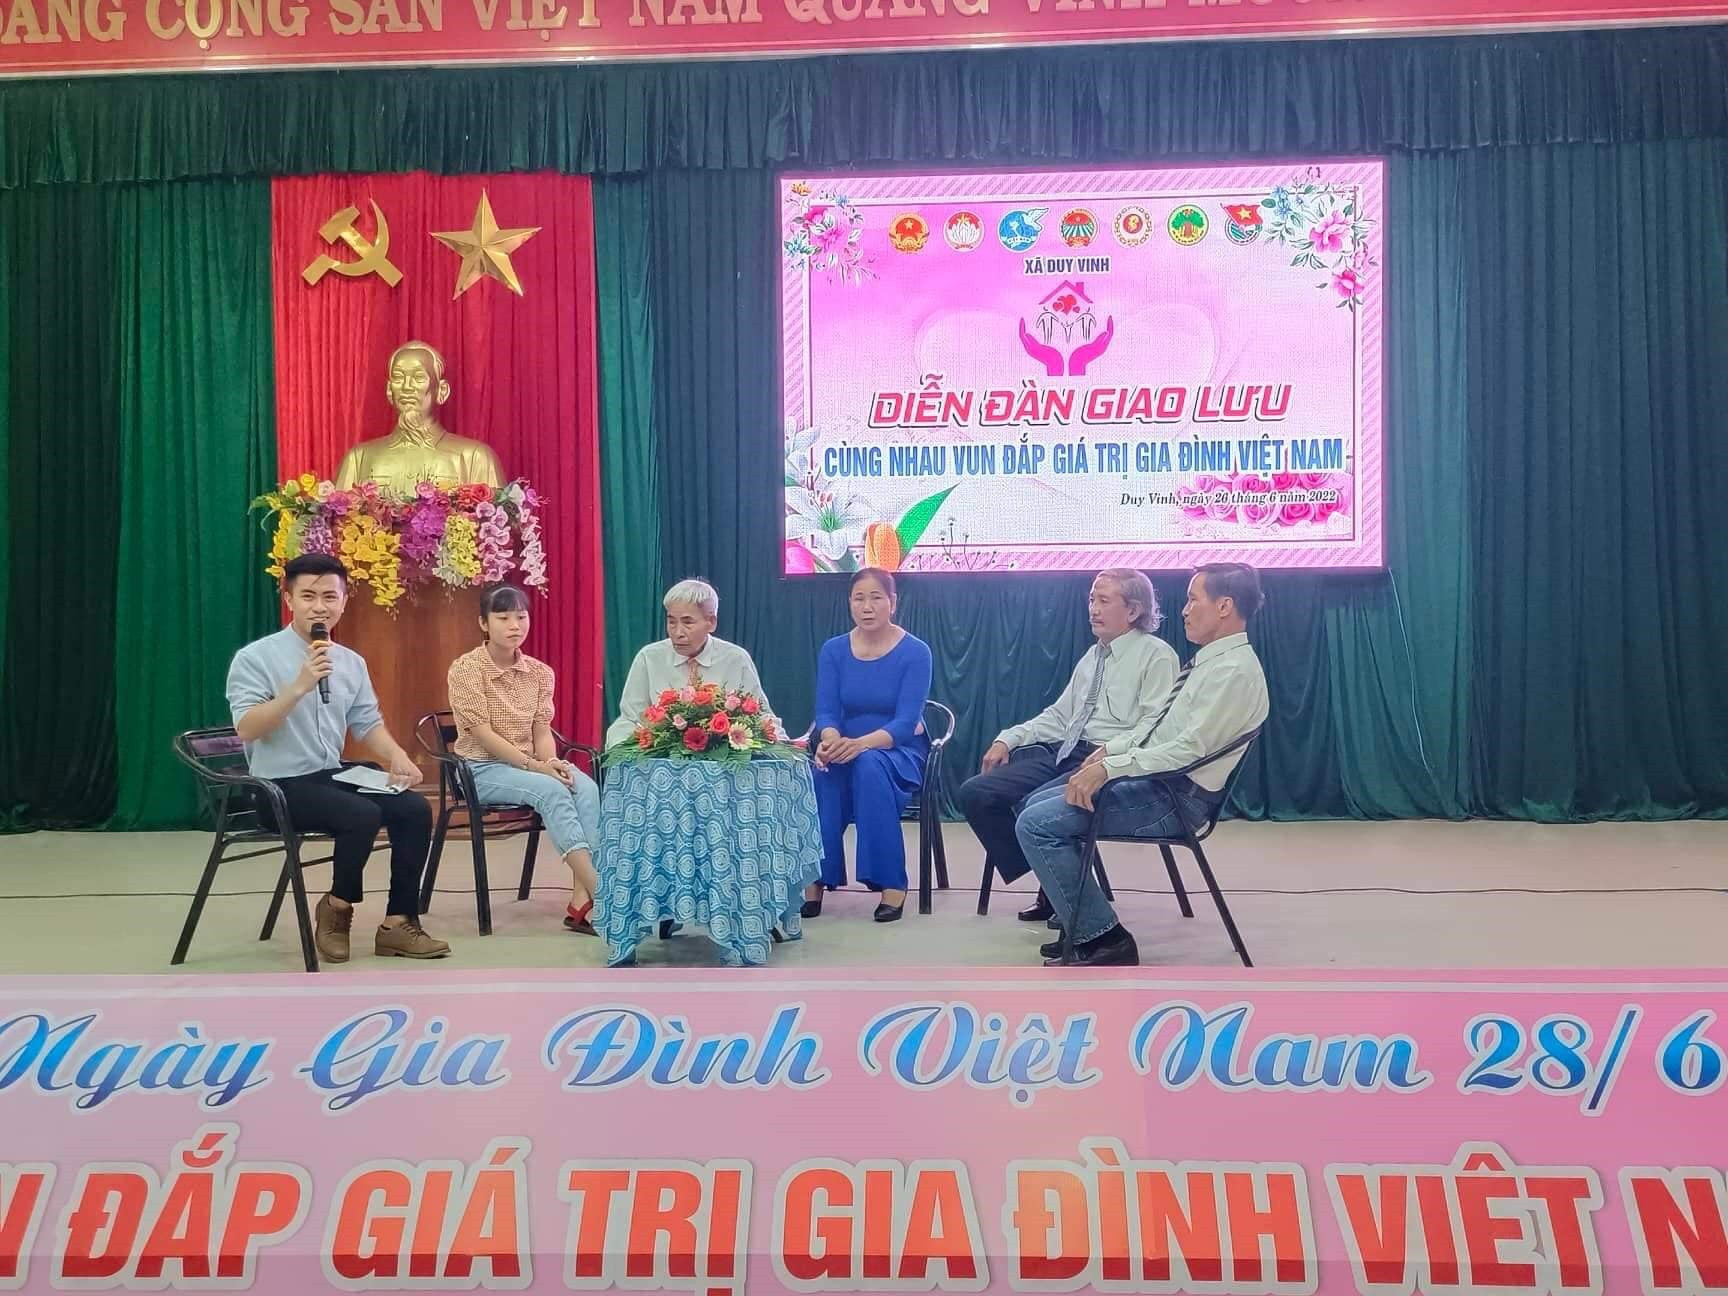 Diễn đàn giao lưu “Cùng nhau vun đắp giá trị gia đình Việt Nam” tại xã Duy Vinh (Duy Xuyên). Ảnh: H.Q